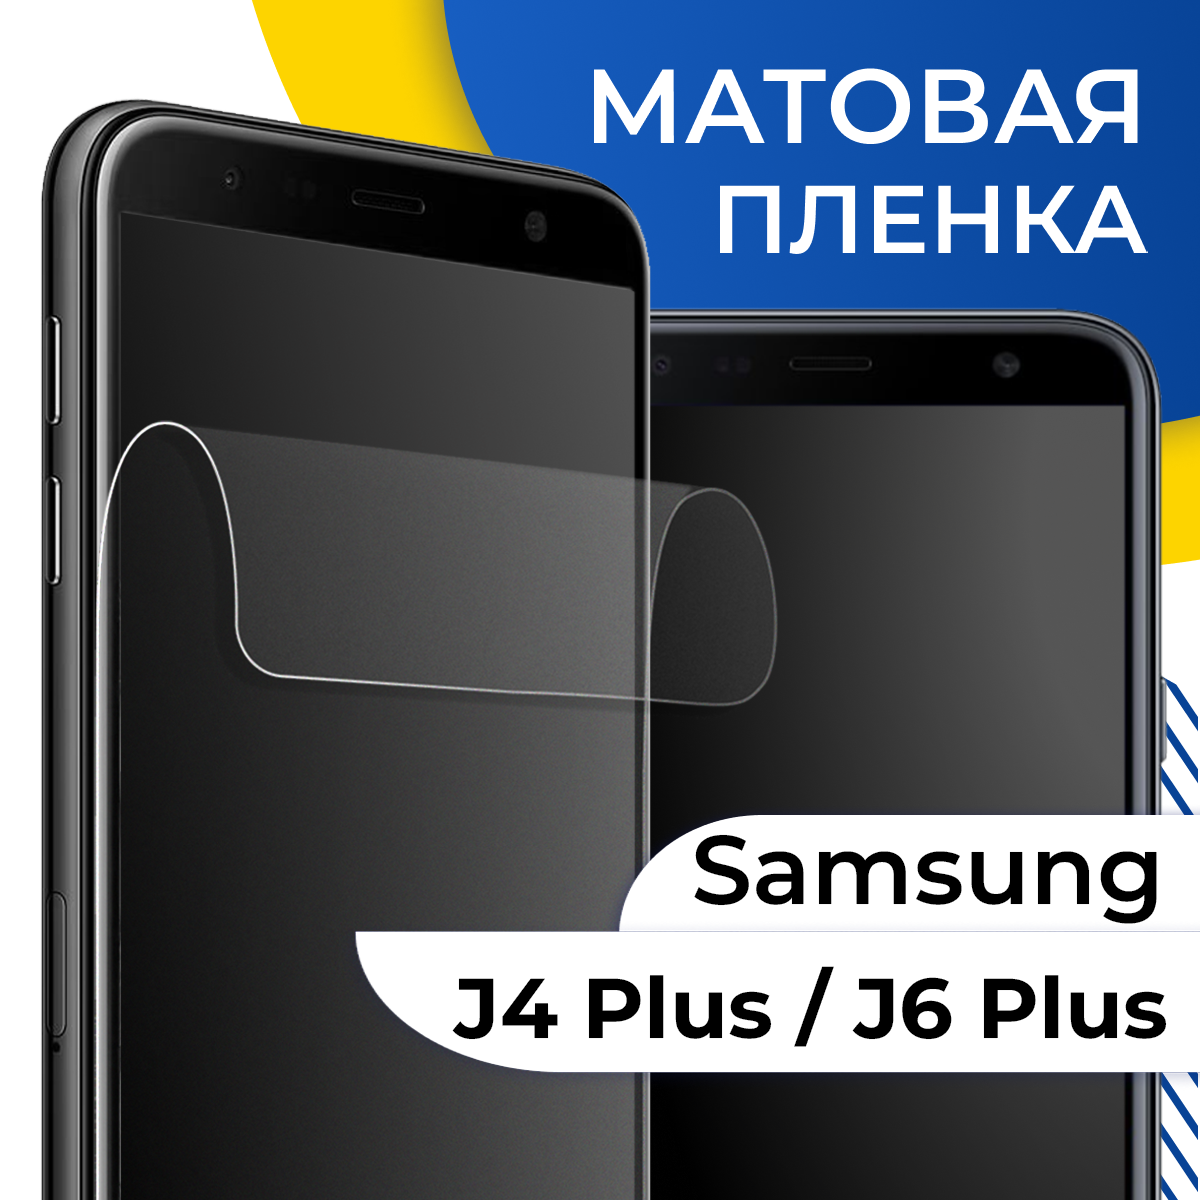 Матовая гидрогелевая пленка для телефона Samsung Galaxy J4 Plus и J6 Plus / Самовосстанавливающаяся пленка на Самсунг Галакси Джи 4 Плюс и Джи 6 Плюс